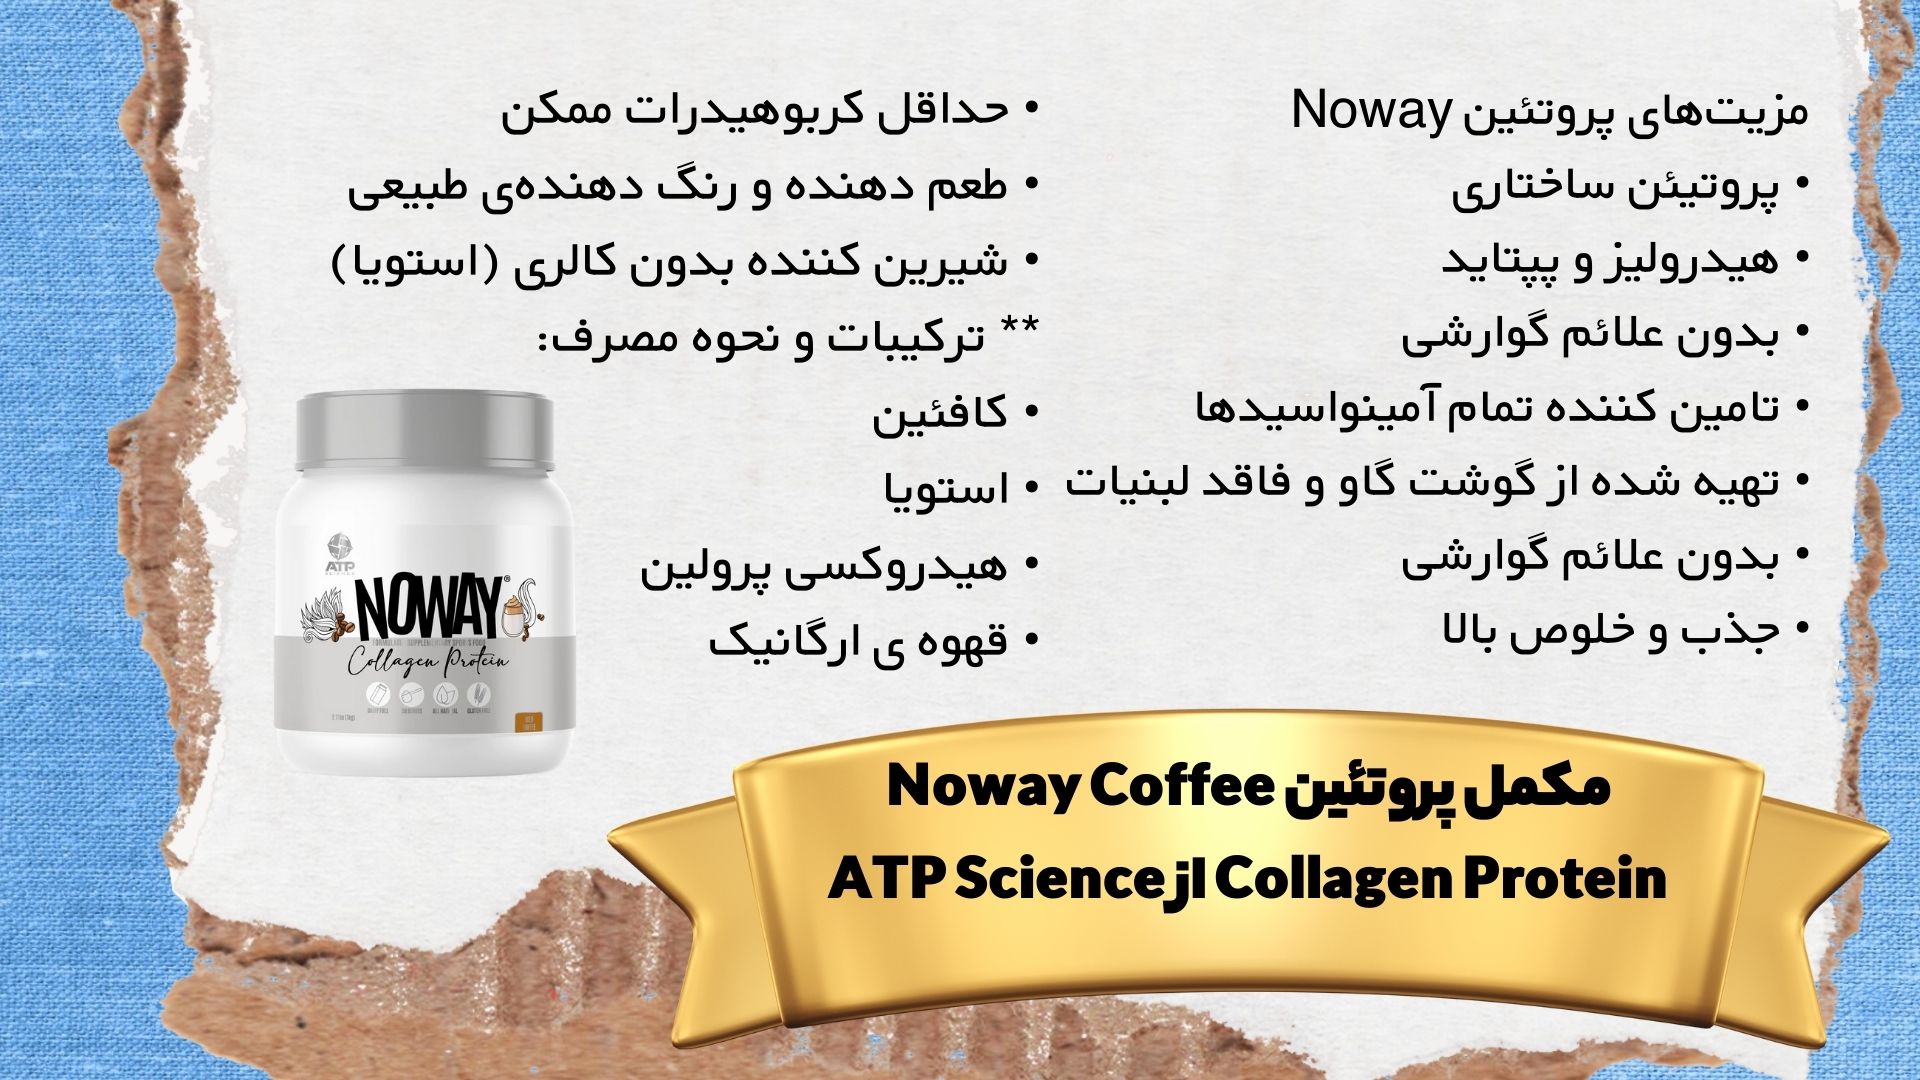 Ù…Ú©Ù…Ù„ Ù¾Ø±ÙˆØªØ¦ÛŒÙ† Noway Coffee Collagen Protein Ø§Ø² ATP Science